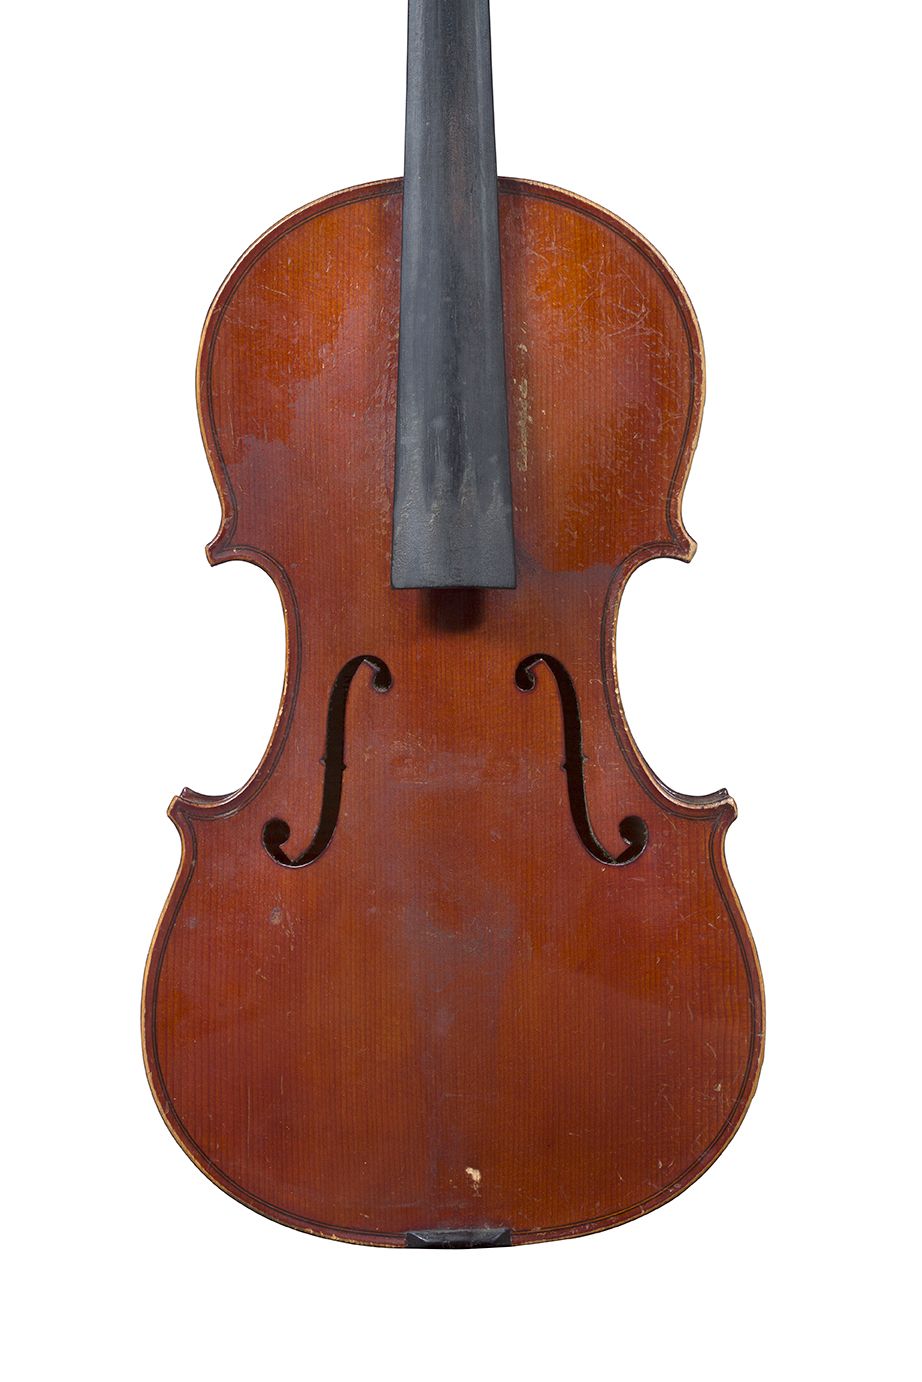 Null 19世纪末的法国小提琴
拉贝尔特家族的作品
带有尼古拉-贝托里尼的标签
状况良好 
背面有359毫米